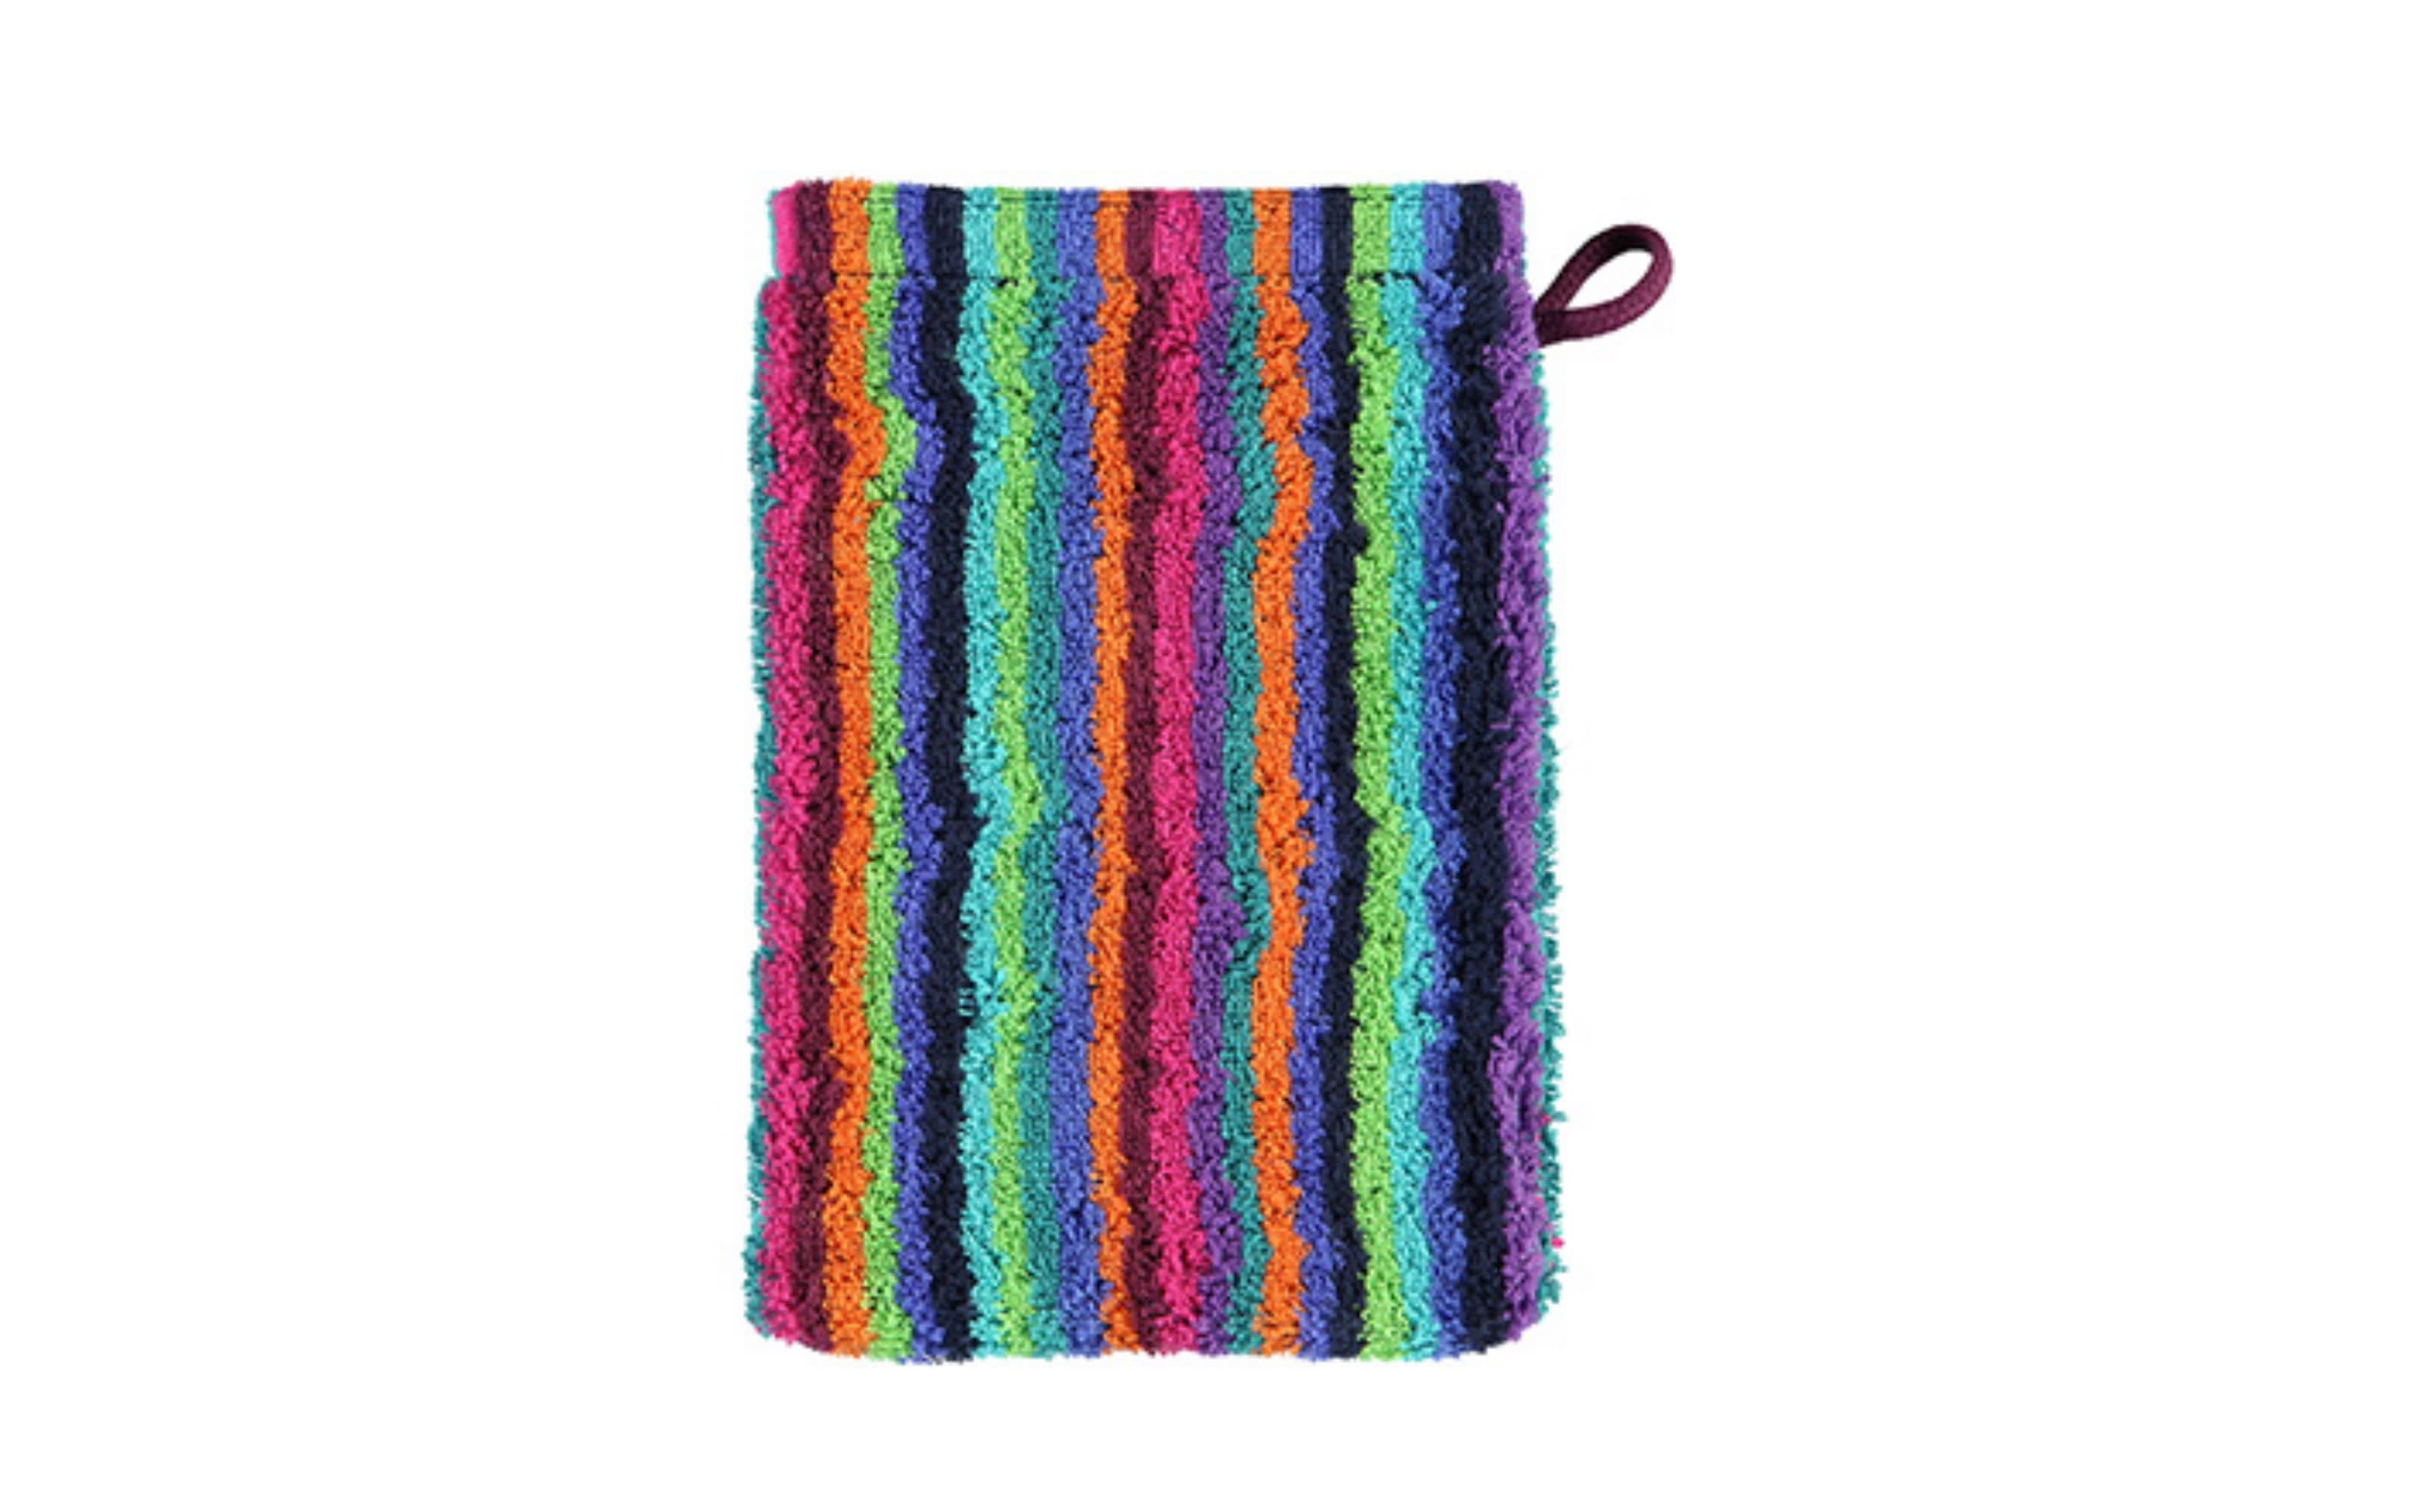 Waschhandschuh Lifestyle Streifen in multicolor dunkel, 16 x 22 cm